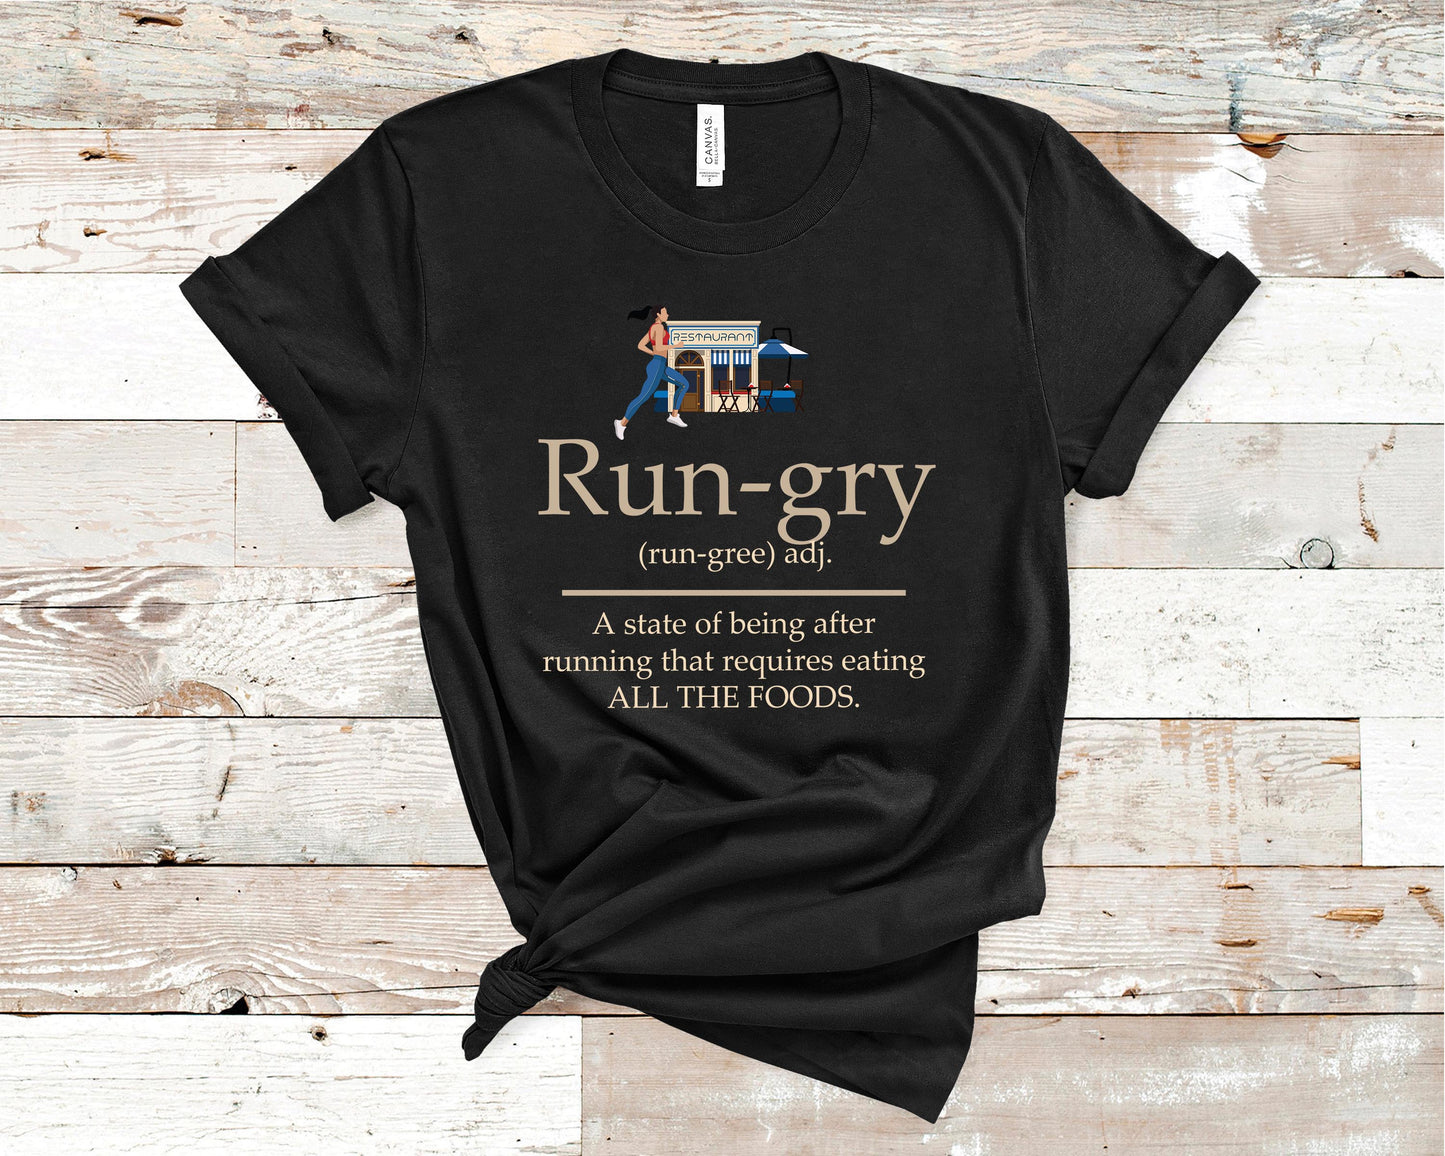 Rungry (Female Runner) - Fitness Shirt